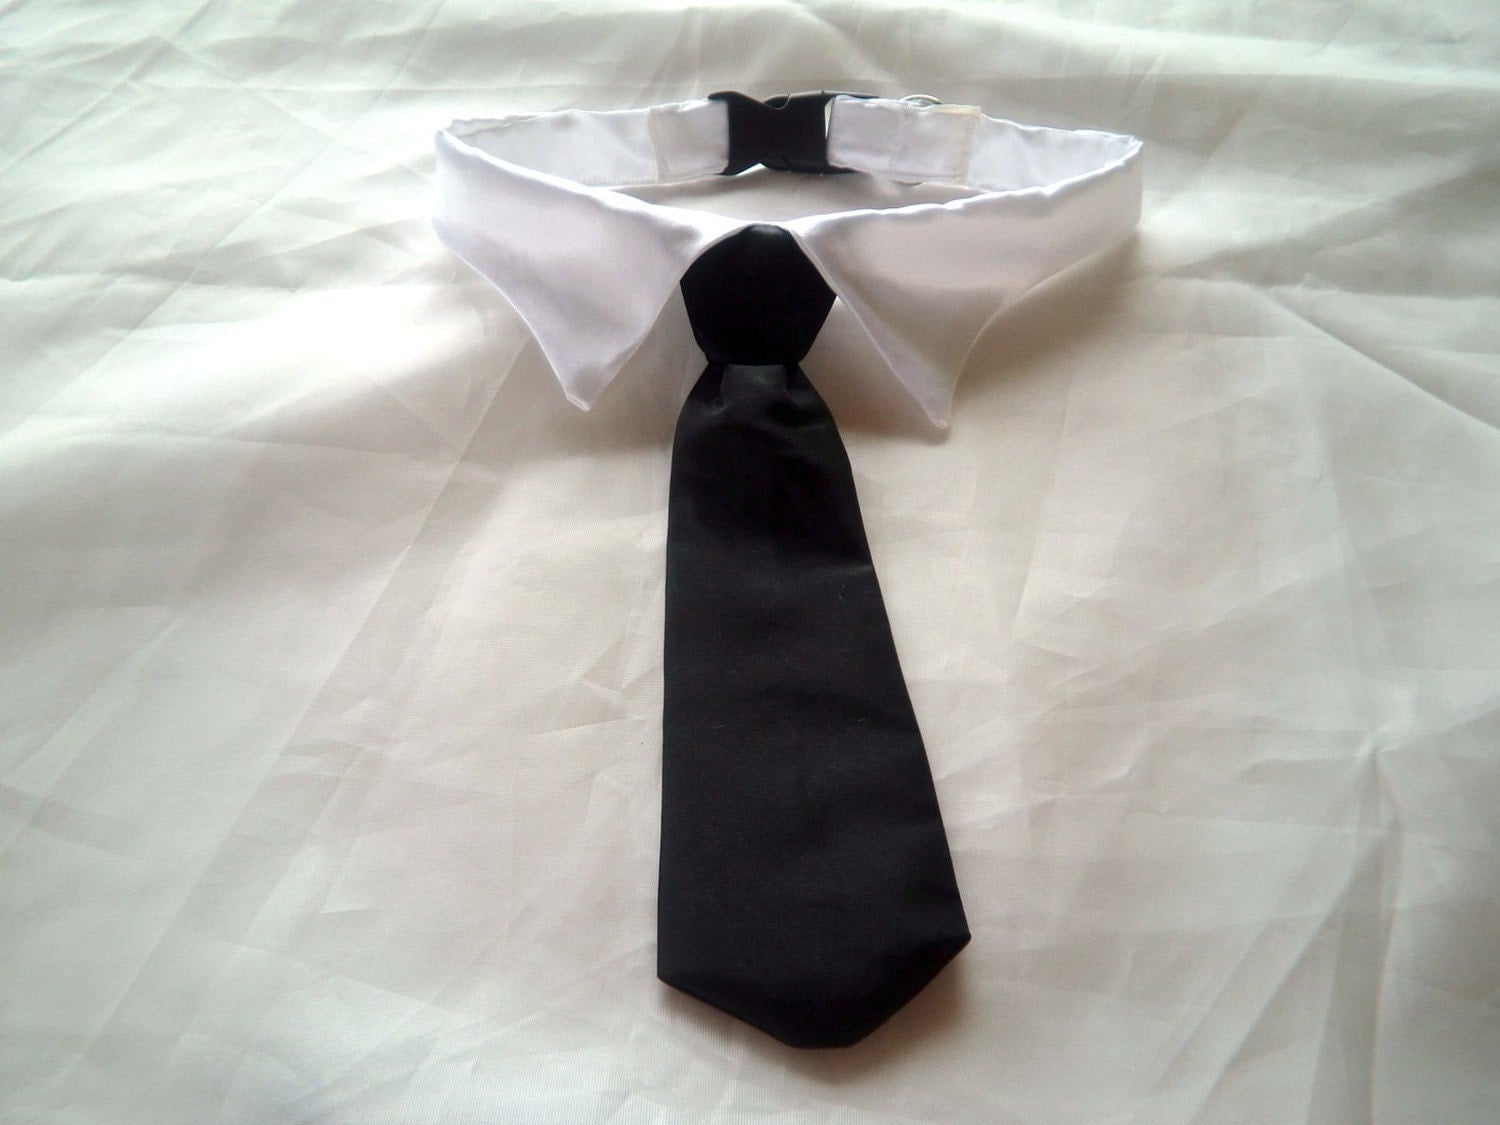 Cat Collar Tie